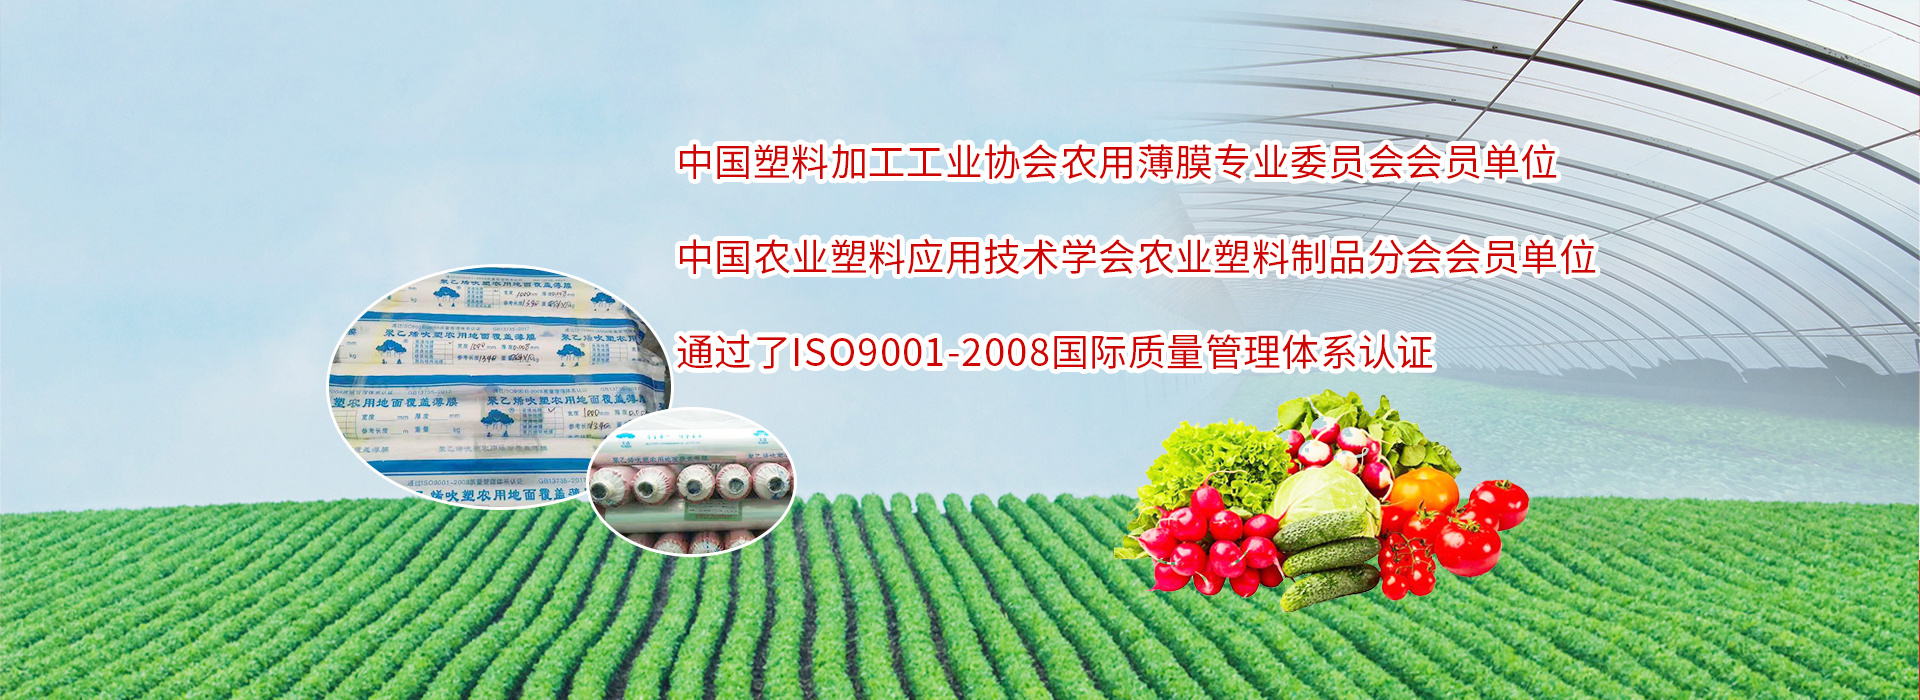 唐山聚豐普廣農業科技有限公司